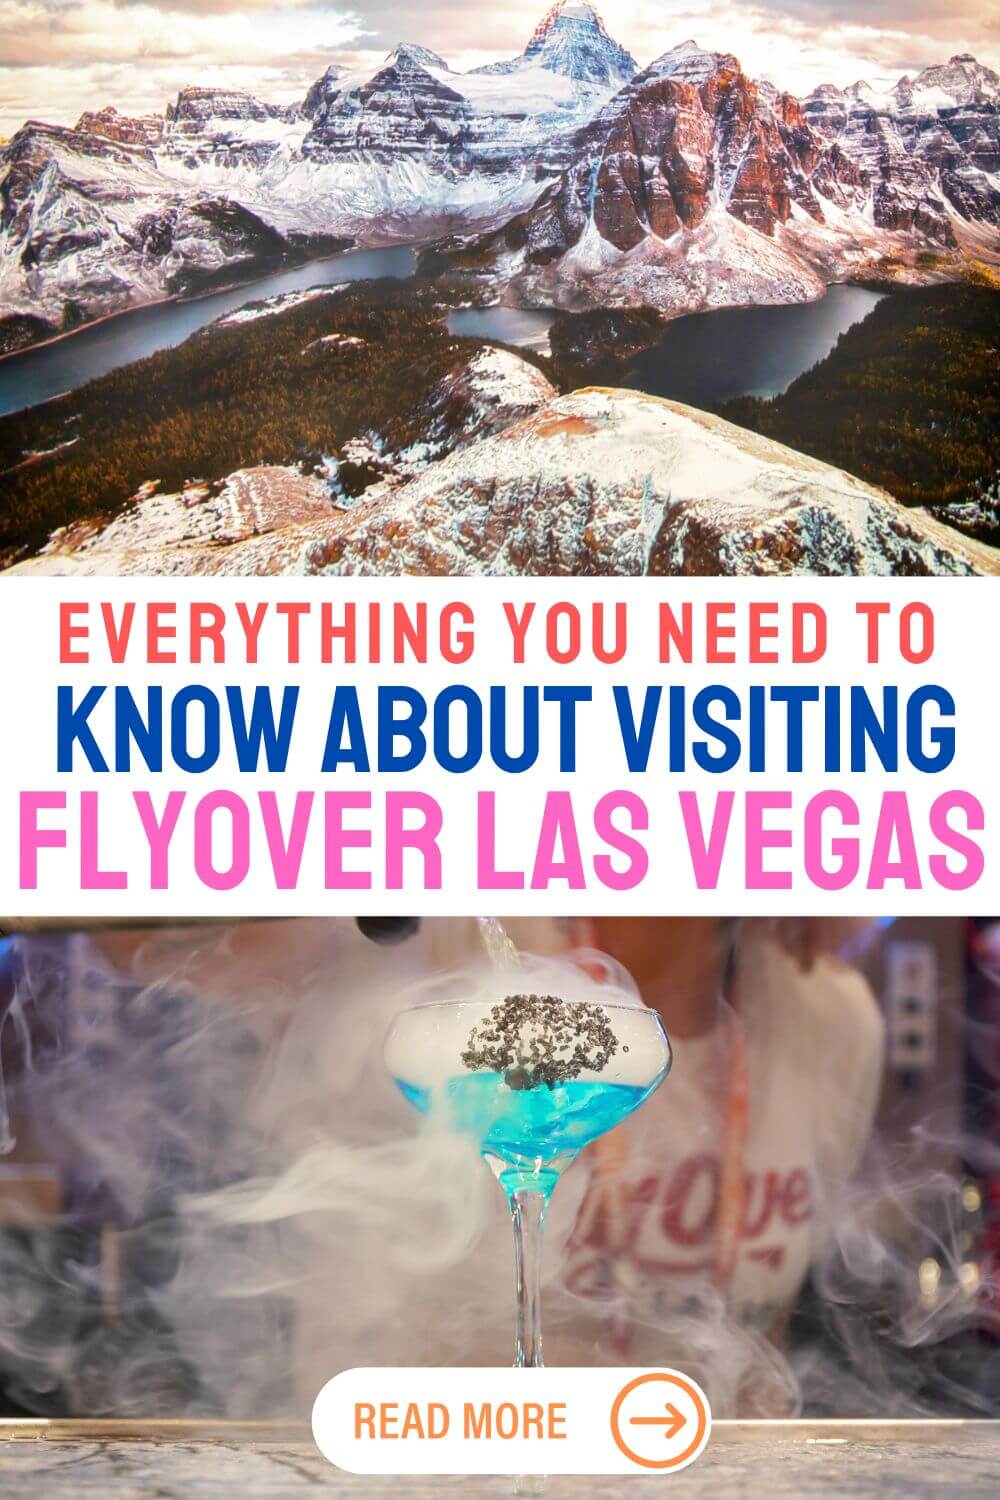 Flyover Las Vegas reviews